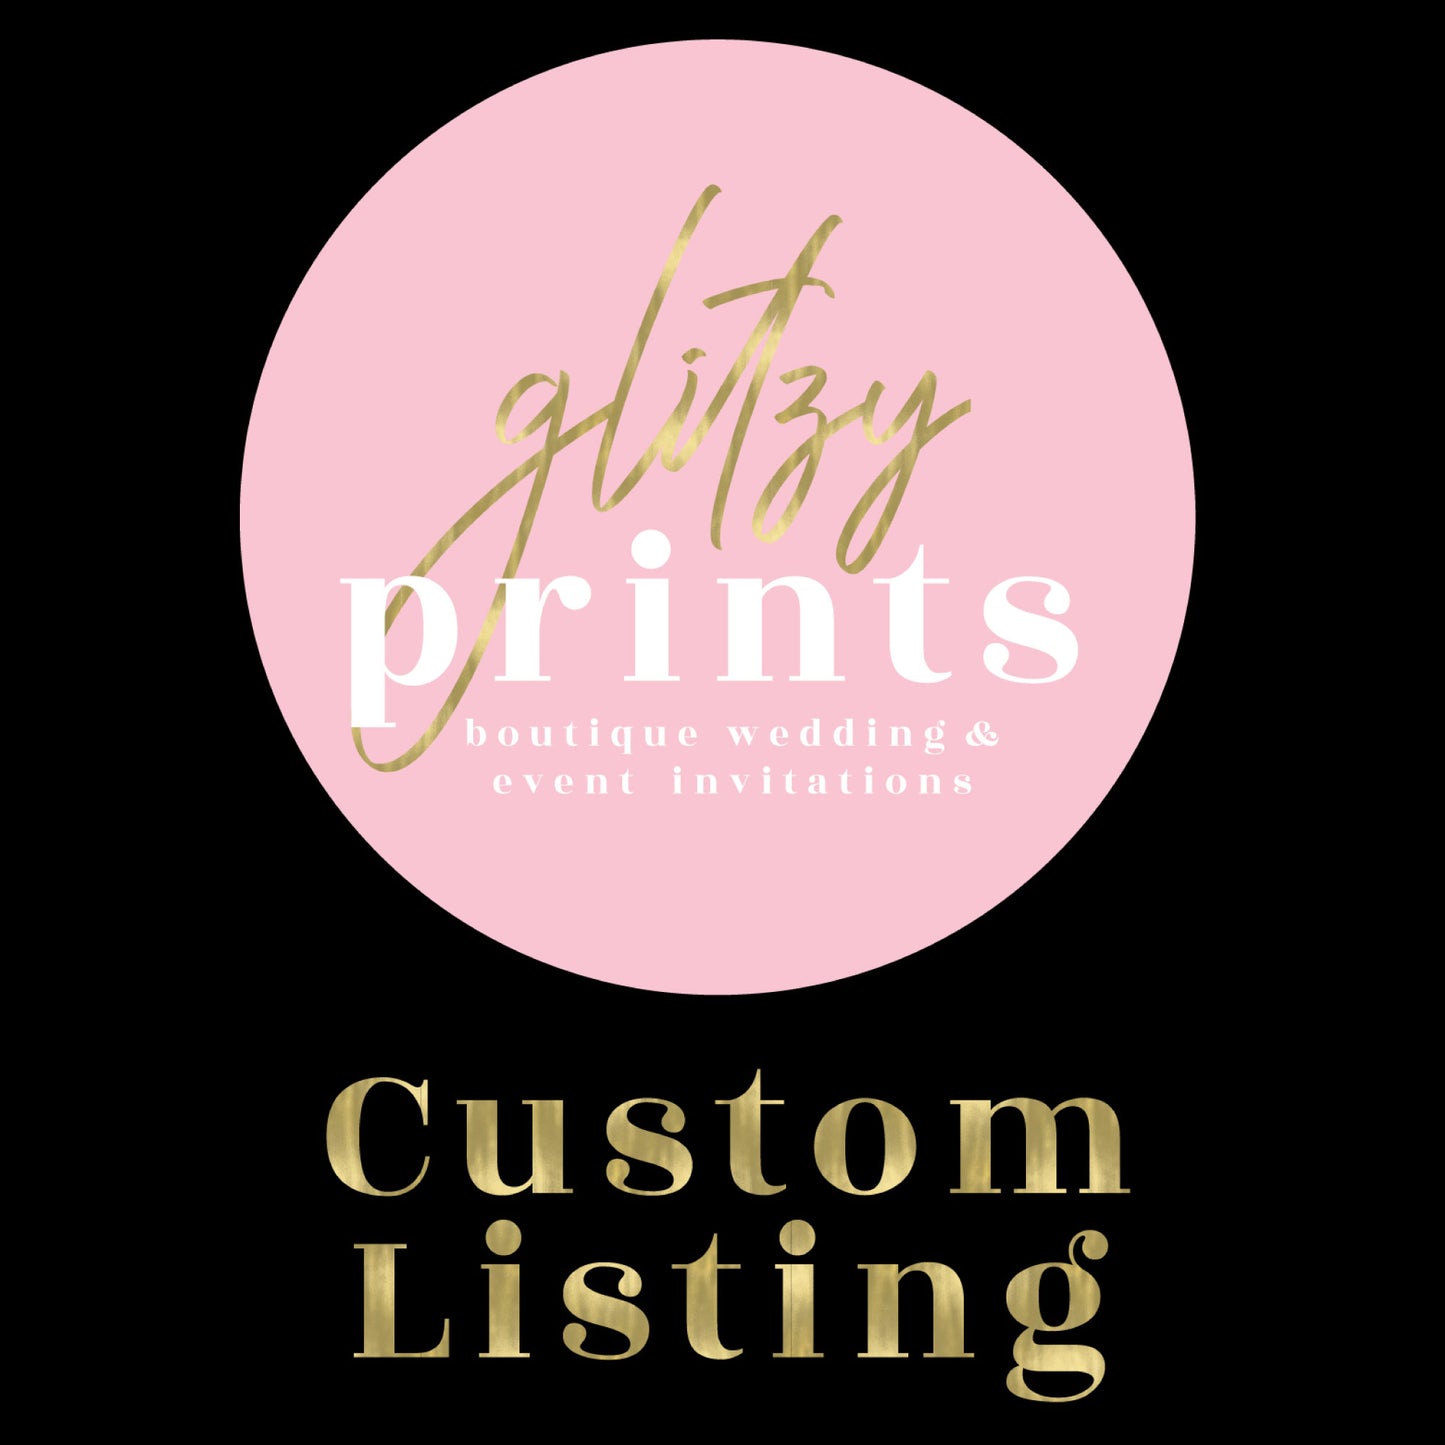 Custom listing for Sylvia